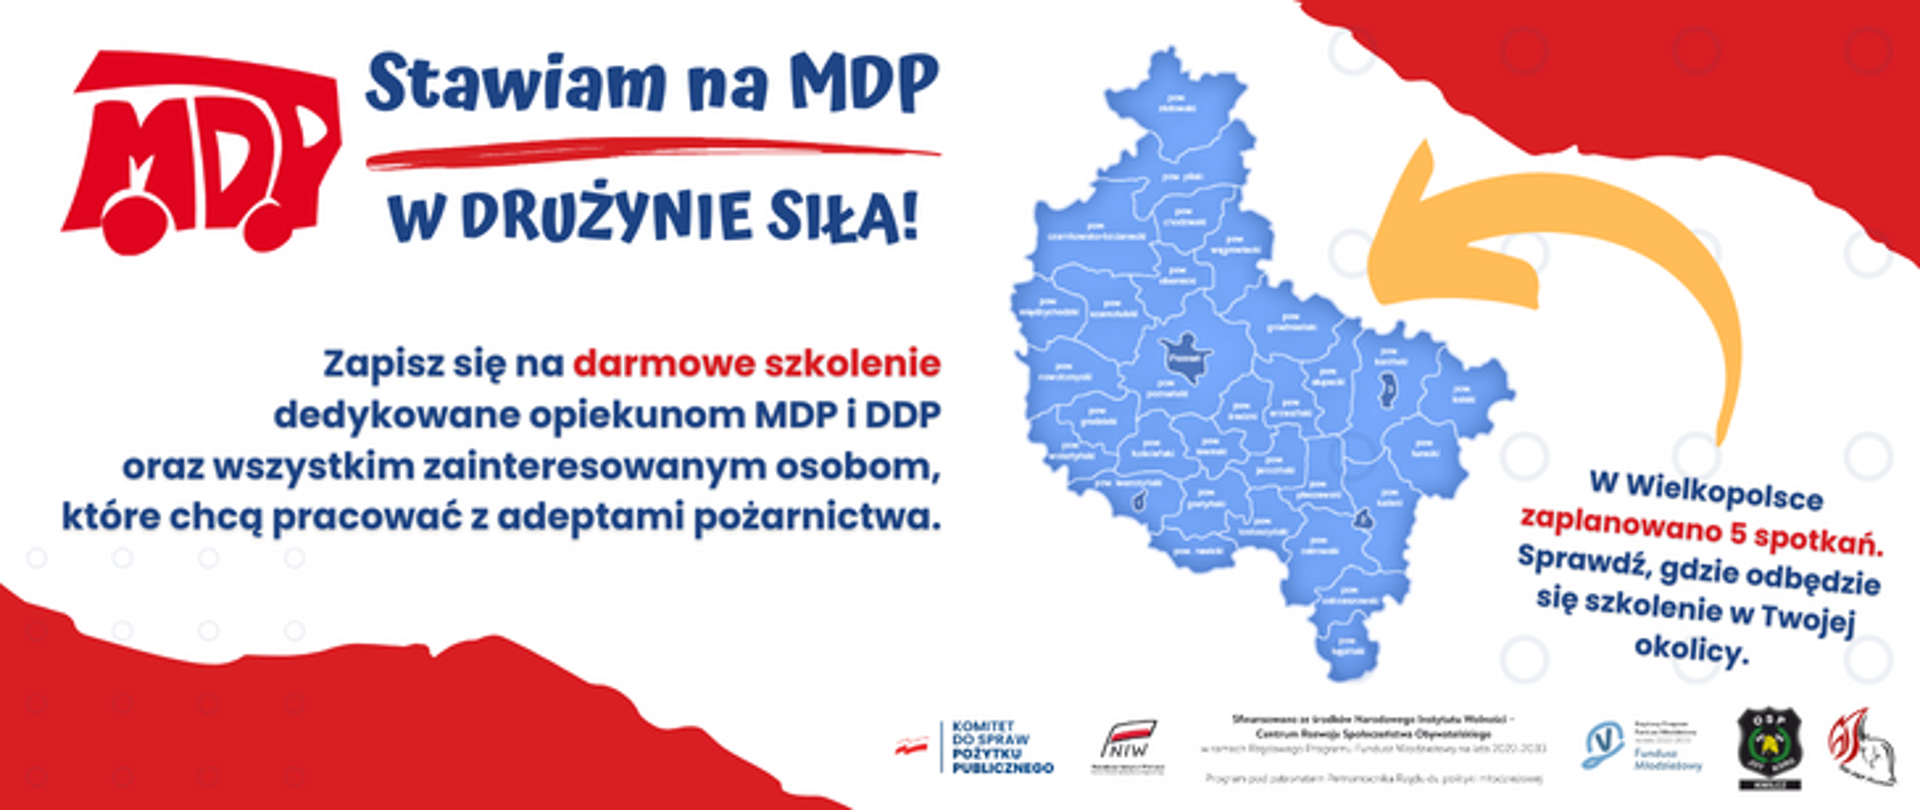 Baner przedstawiający mapę województwa wielkopolskiego z podziałem administracyjnym 